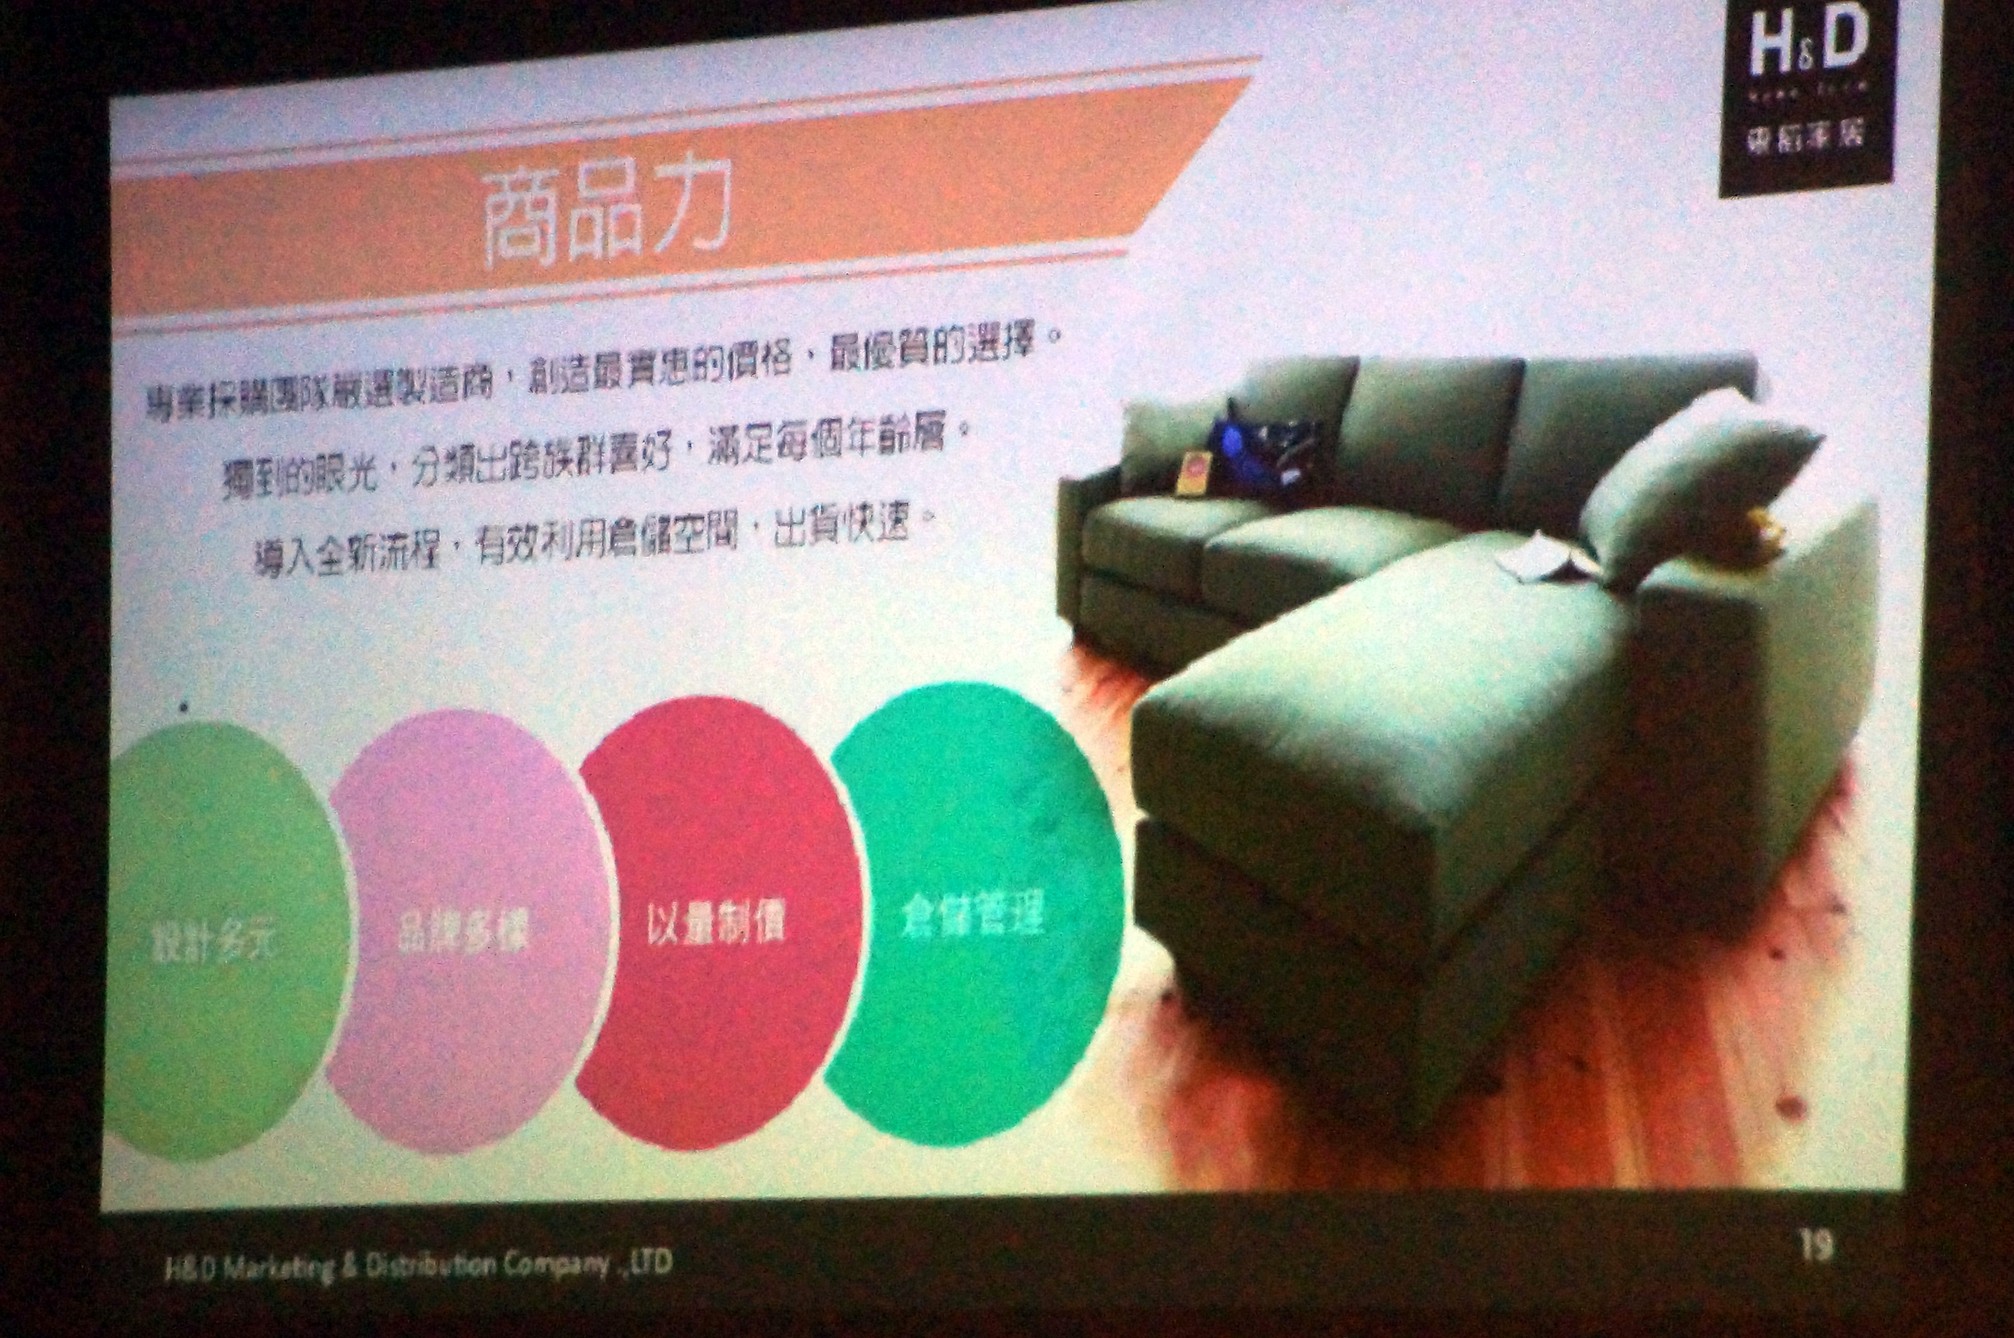 品牌電商參訪第一站：H&D 東稻家居---矢志成為台灣最大泛居家通路平台